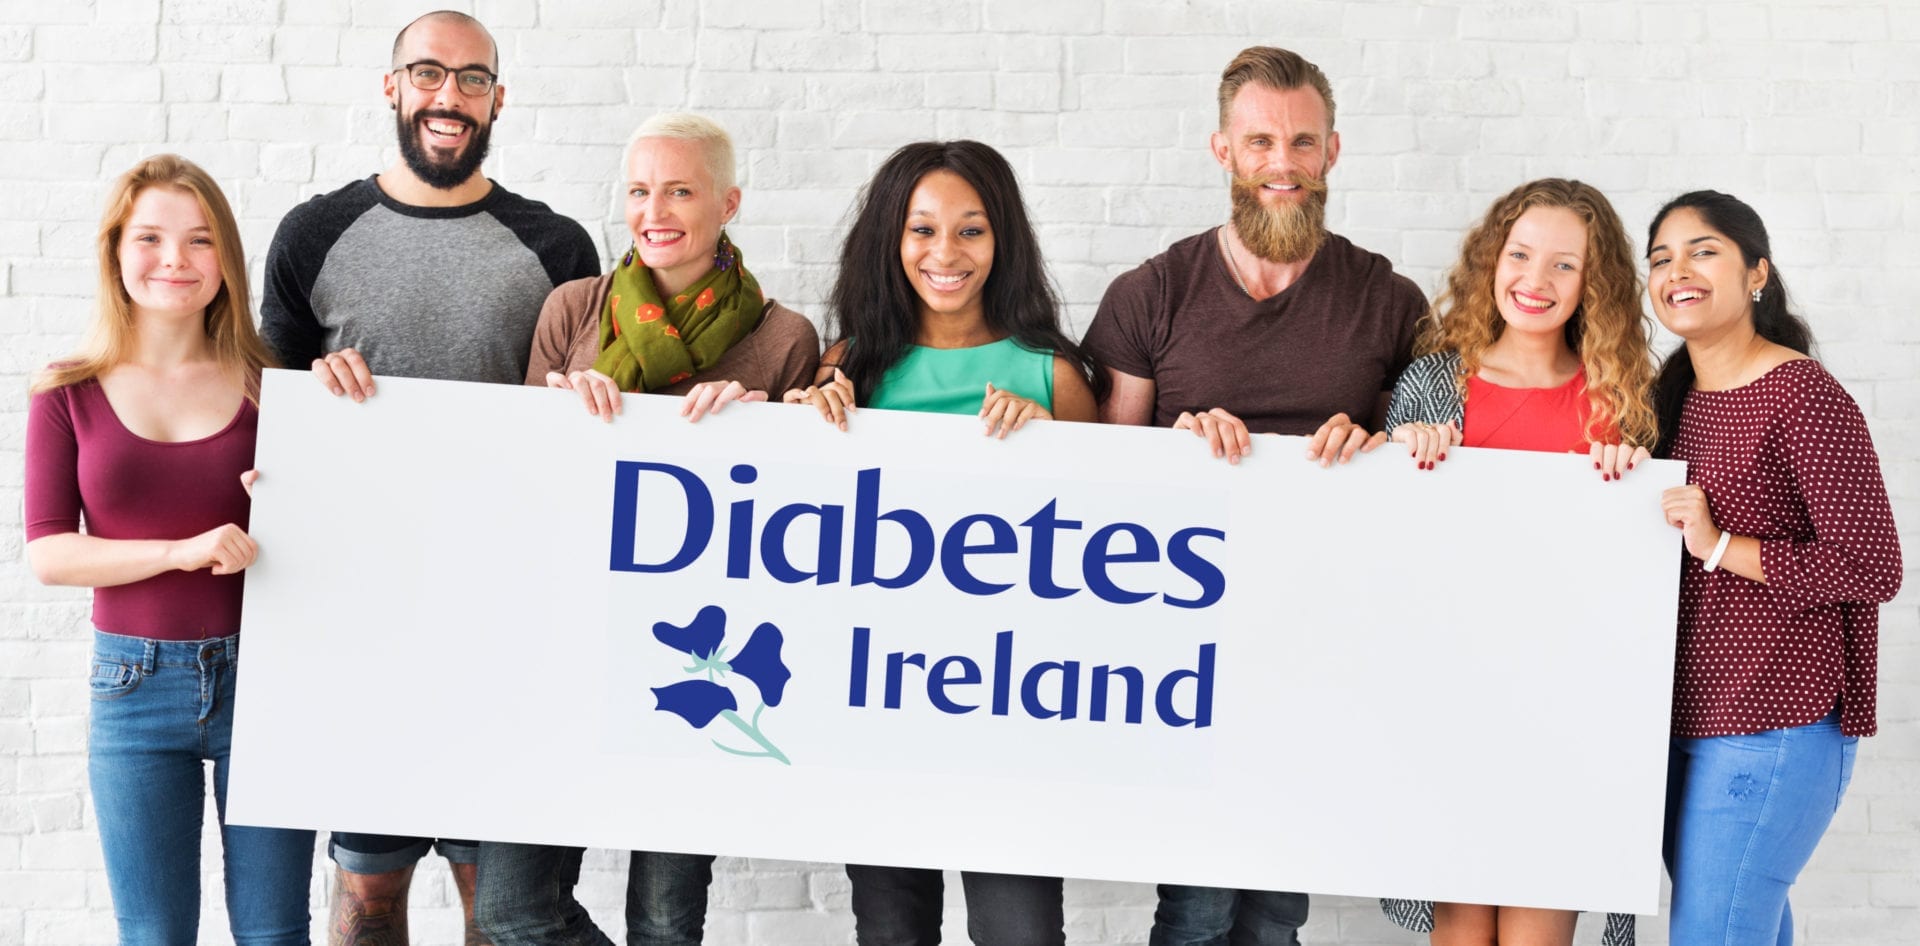 www.diabetes.ie